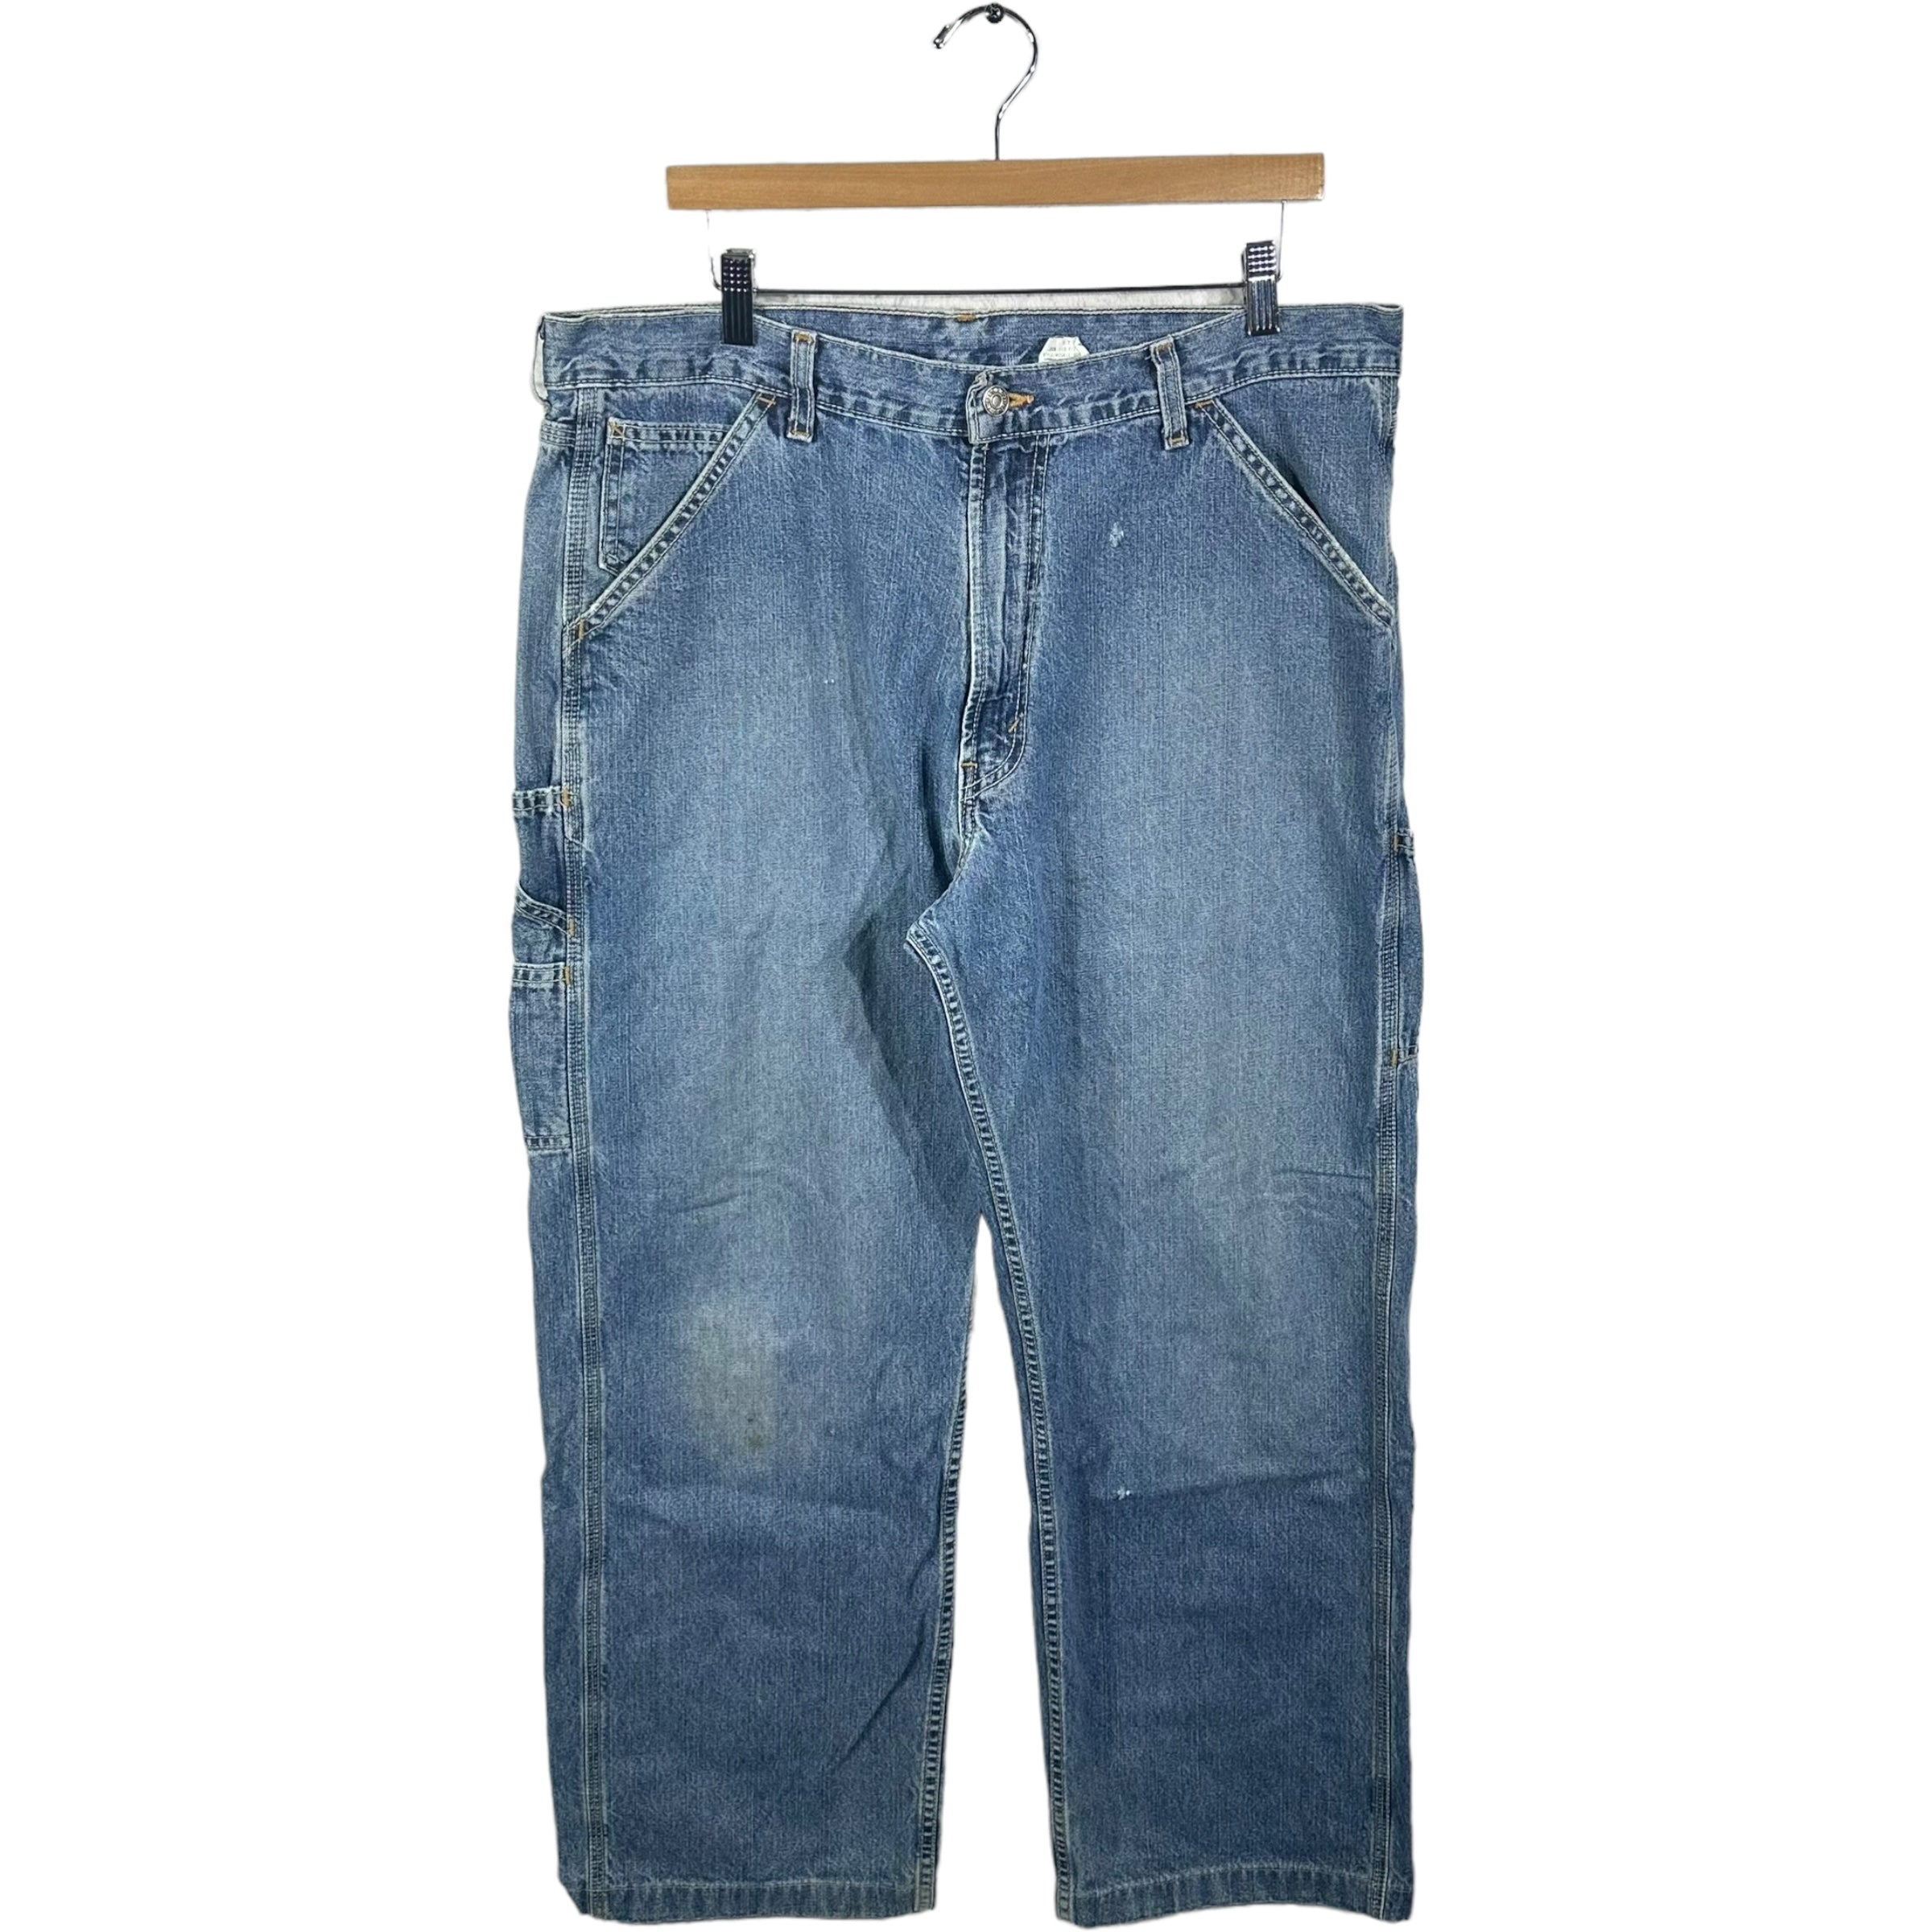 Vintage Levis Cargo Denim Jeans